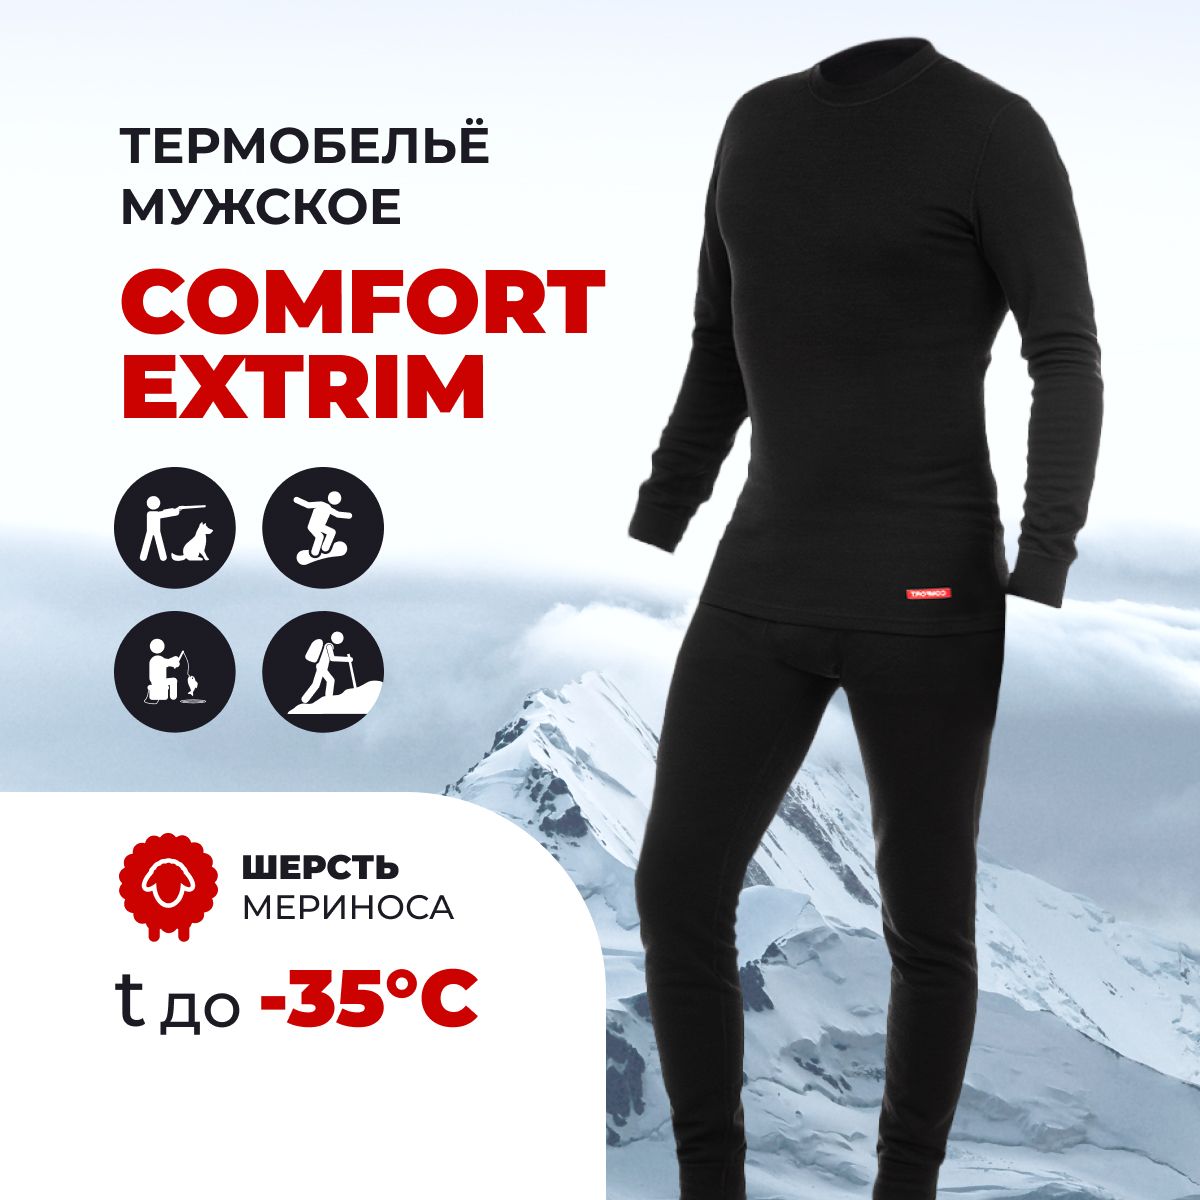 Термобелье comfort. Термобелье Comfort Extrim 3 слоя. Comfort термобелье коробка. Термобельё мужское Comfort Extrim трехслойное купить в Тюмени.